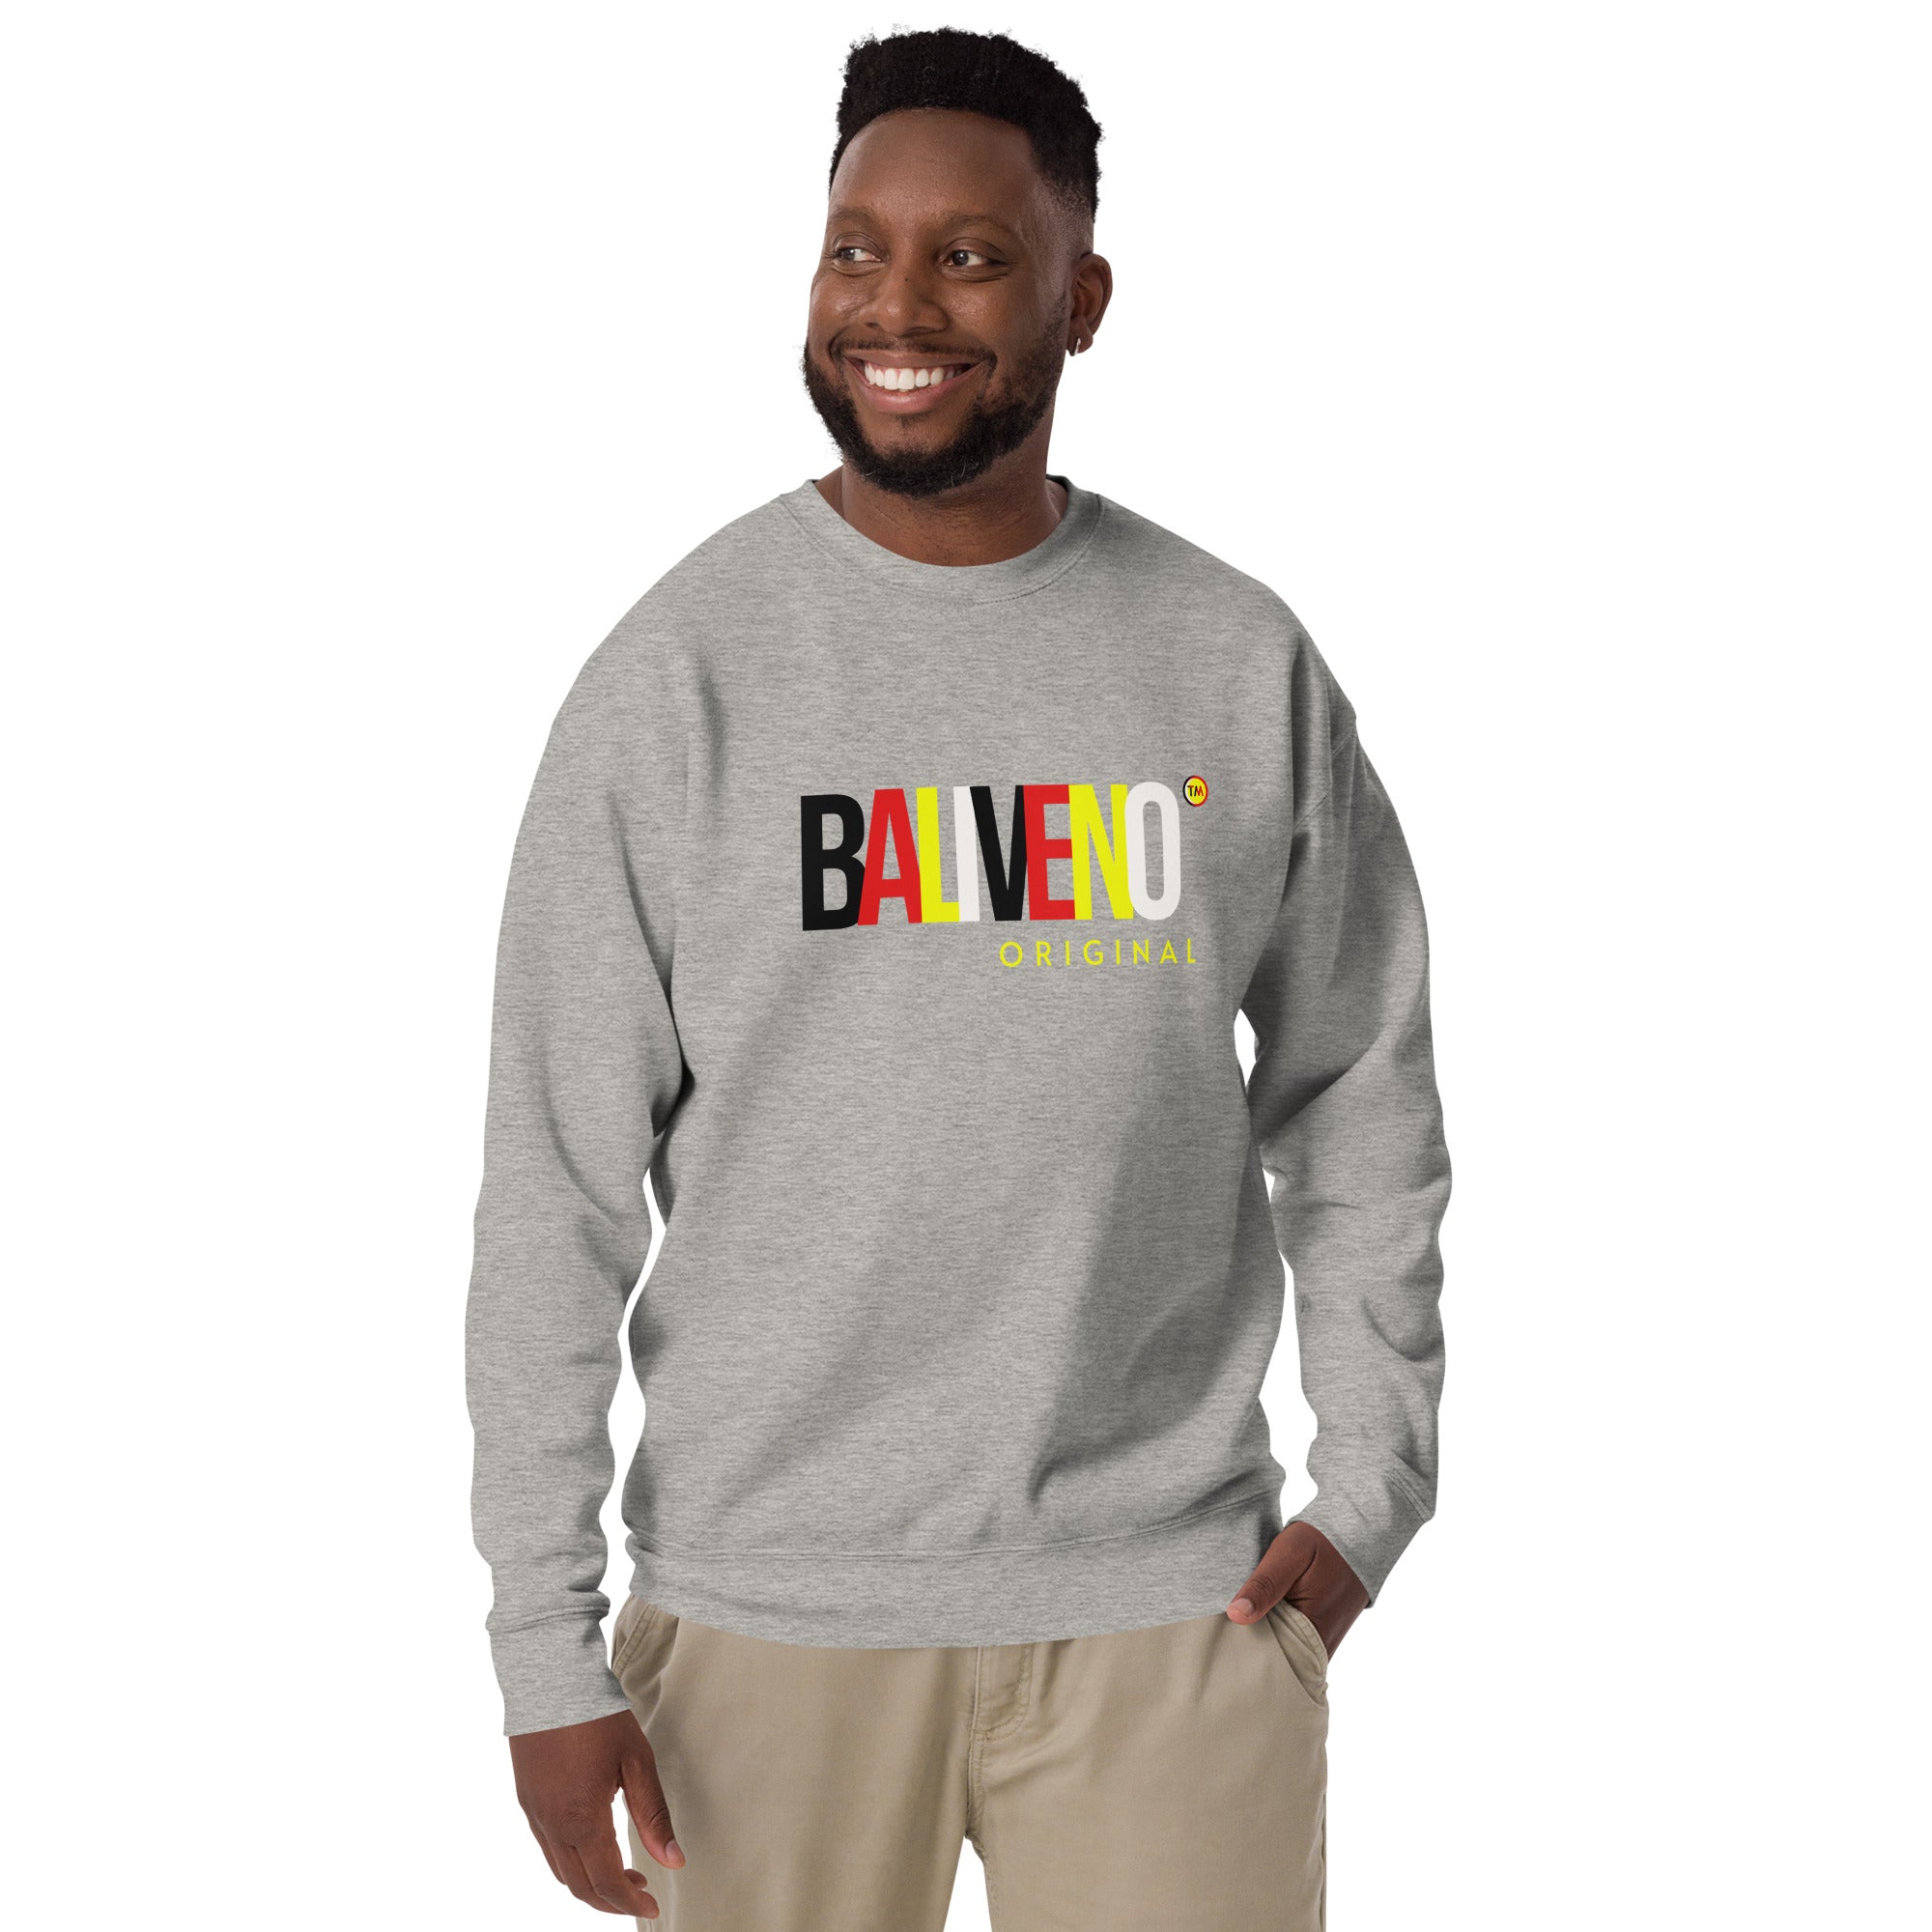 Baliveno Unisex Sweatshirt, Printed Sweatshirt, Baliveno Fashion, Cotton Sweatshirt,